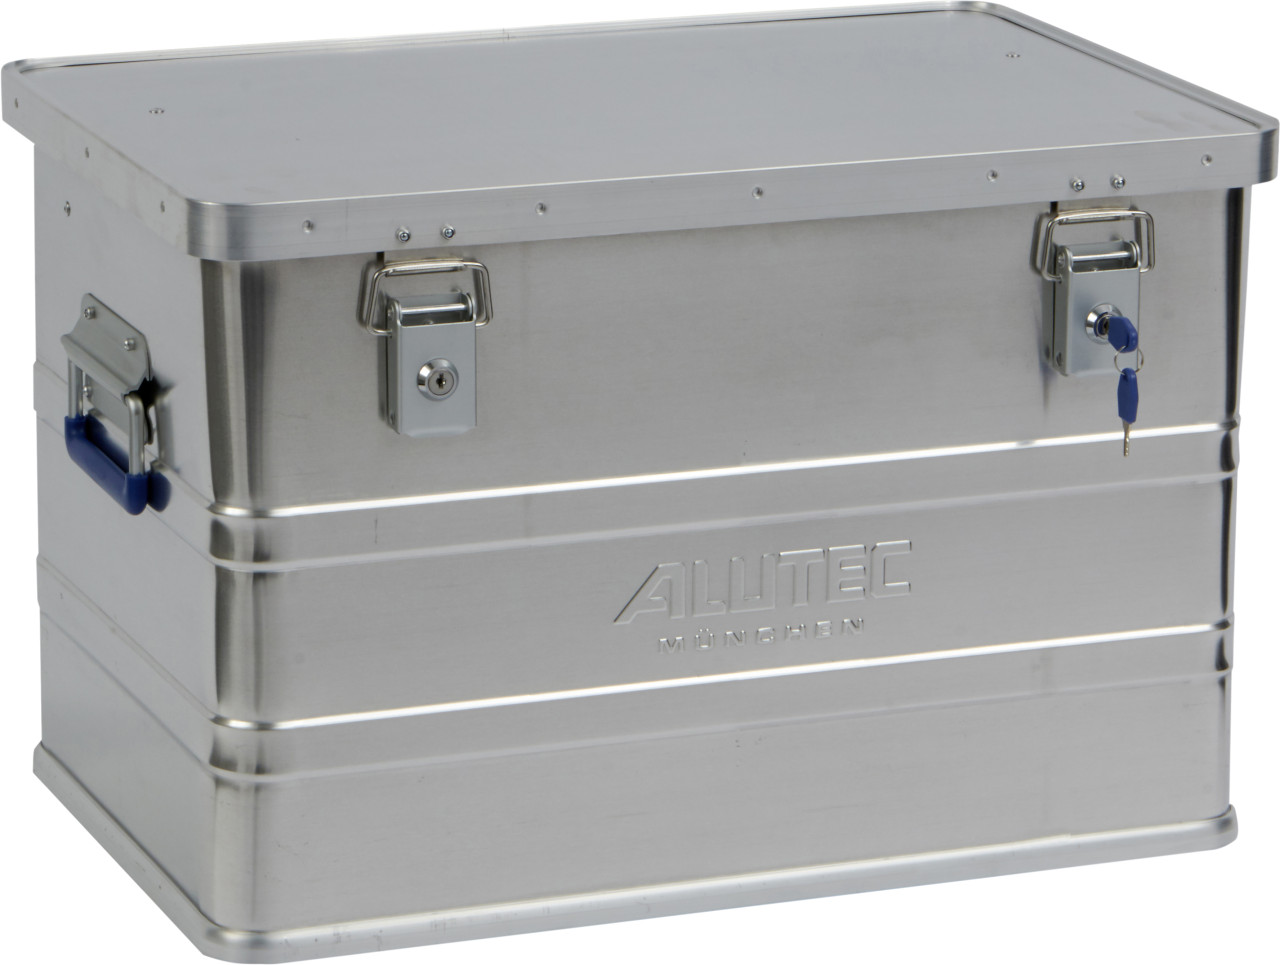 Alutec Aluminiumbox Classic M 58 x 39 x 38 cm von Alutec